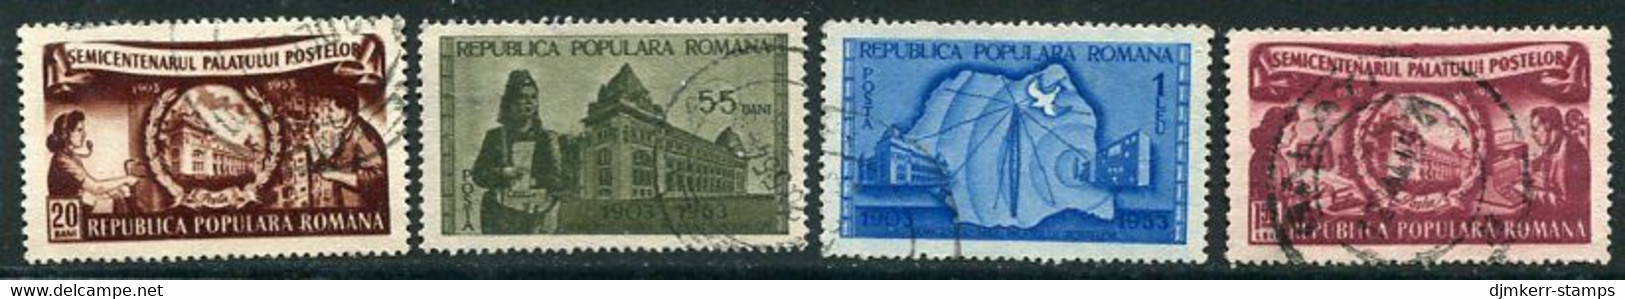 ROMANIA 1953 Post Office Building Used.  Michel 1445-48 - Oblitérés